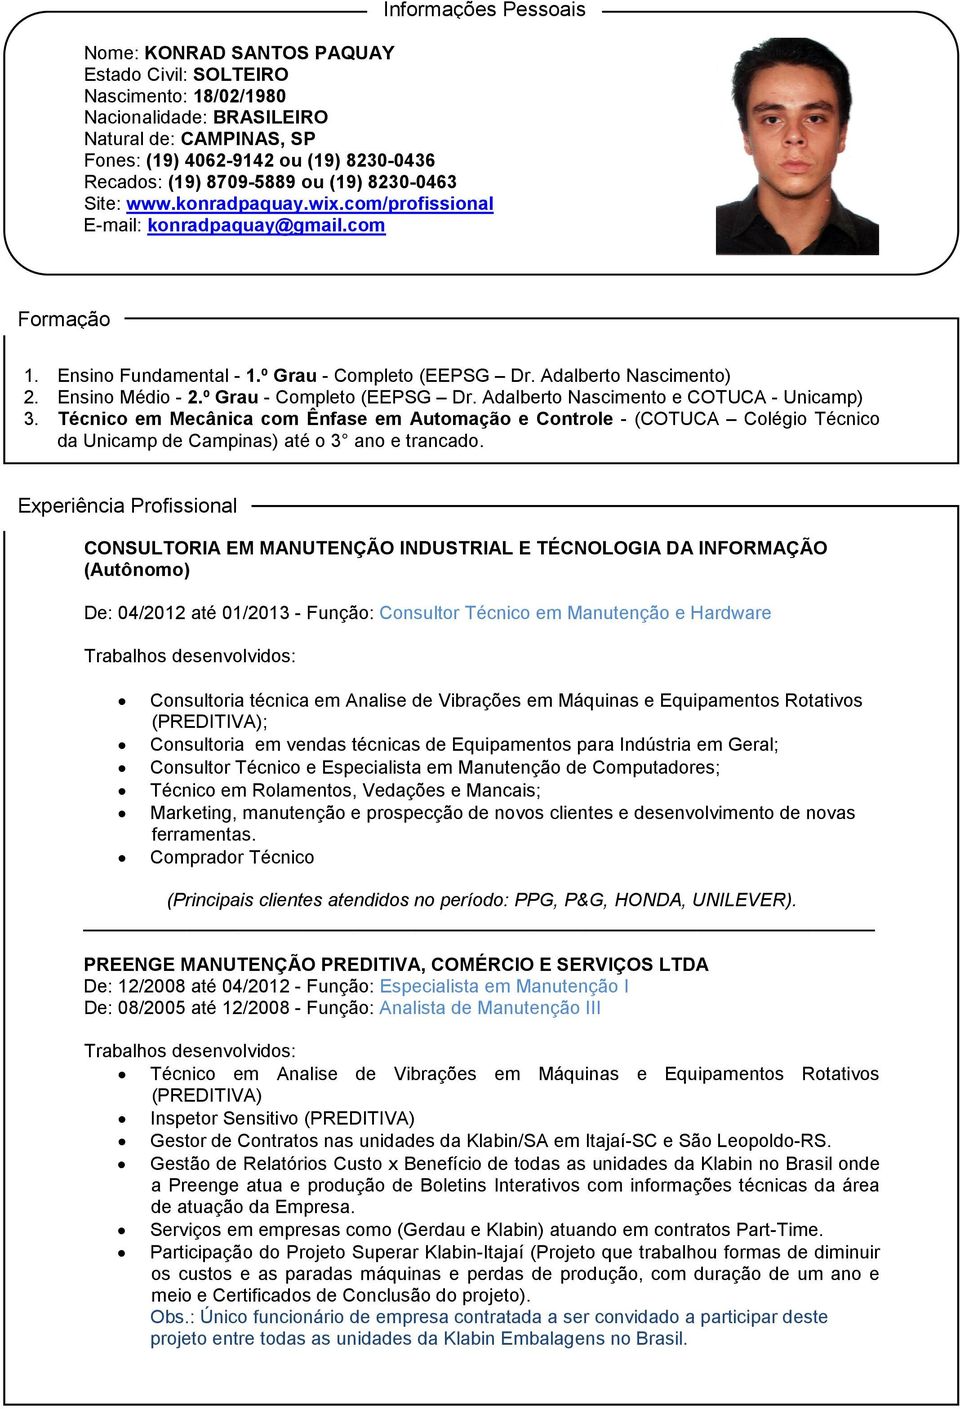 Ensino Médio - 2.º Grau - Completo (EEPSG Dr. Adalberto Nascimento e COTUCA - Unicamp) 3.